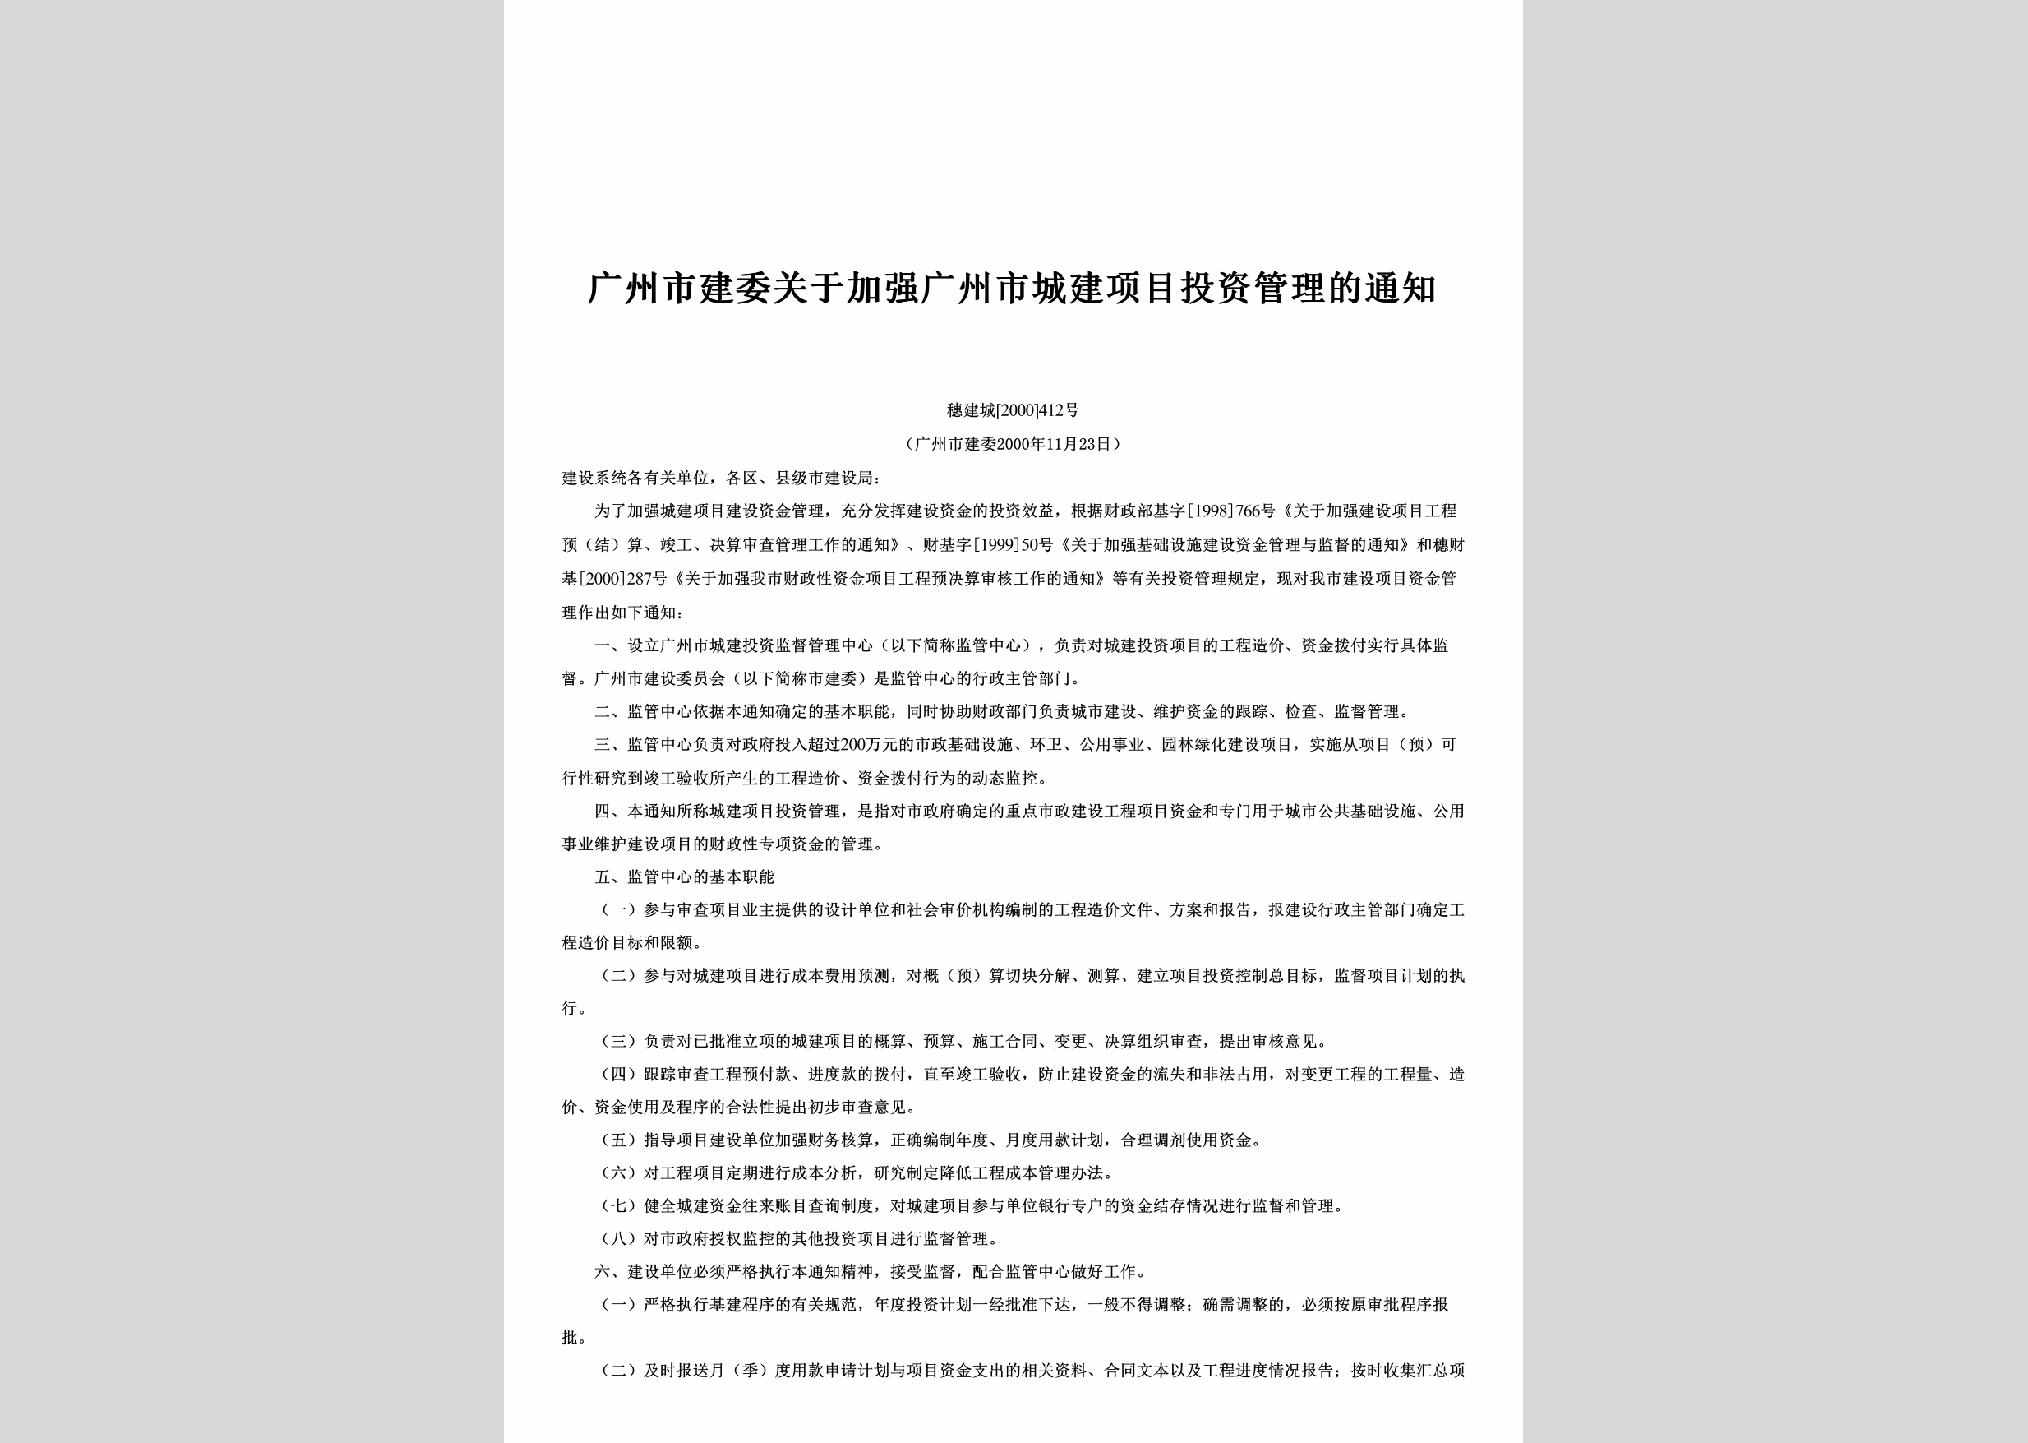 穗建城[2000]412号：关于加强广州市城建项目投资管理的通知